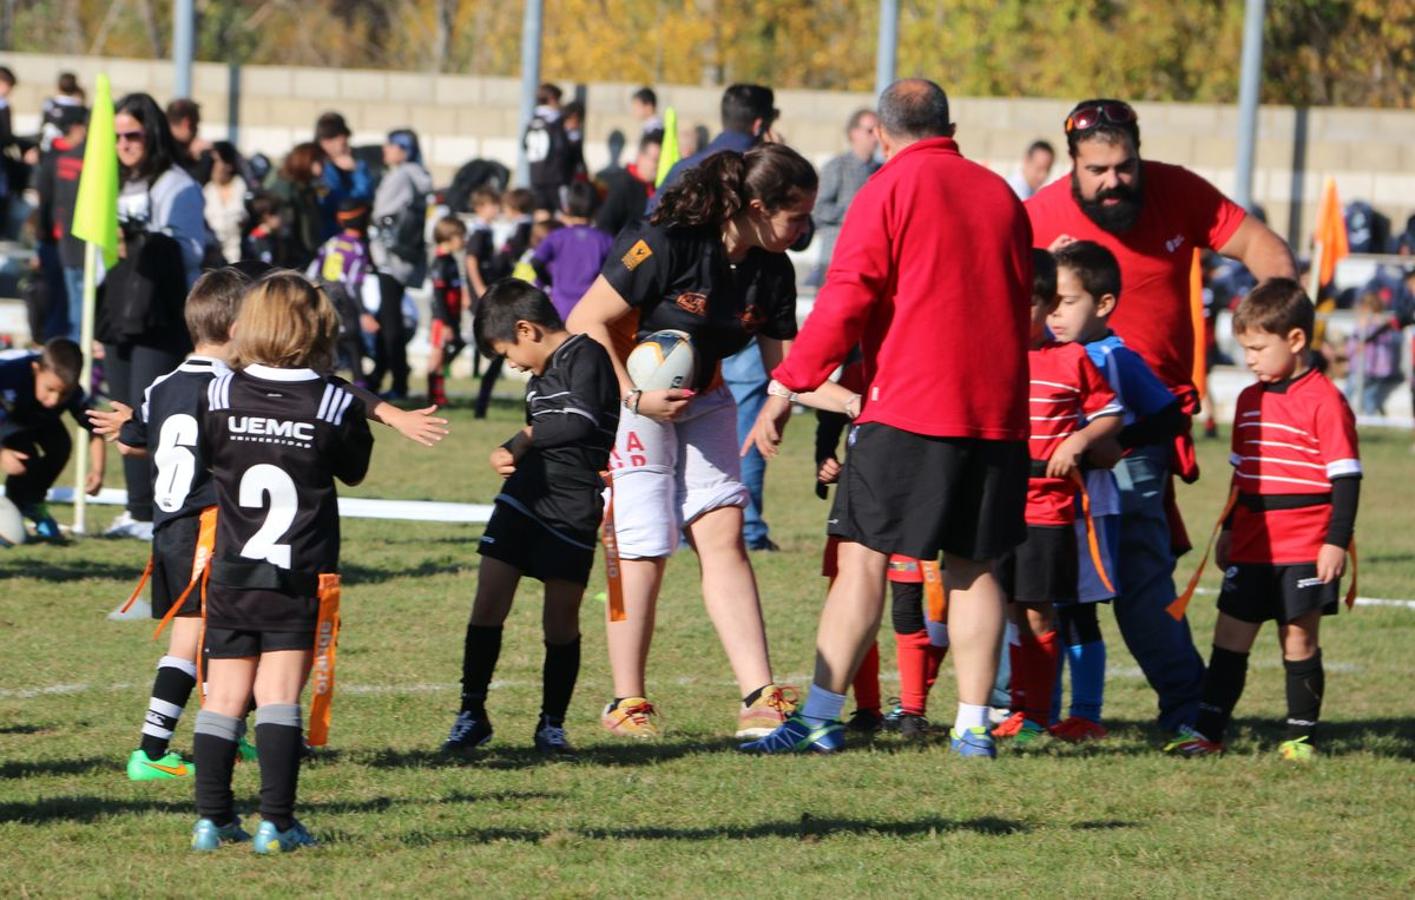 El rugby proclama sus valores entre los niños